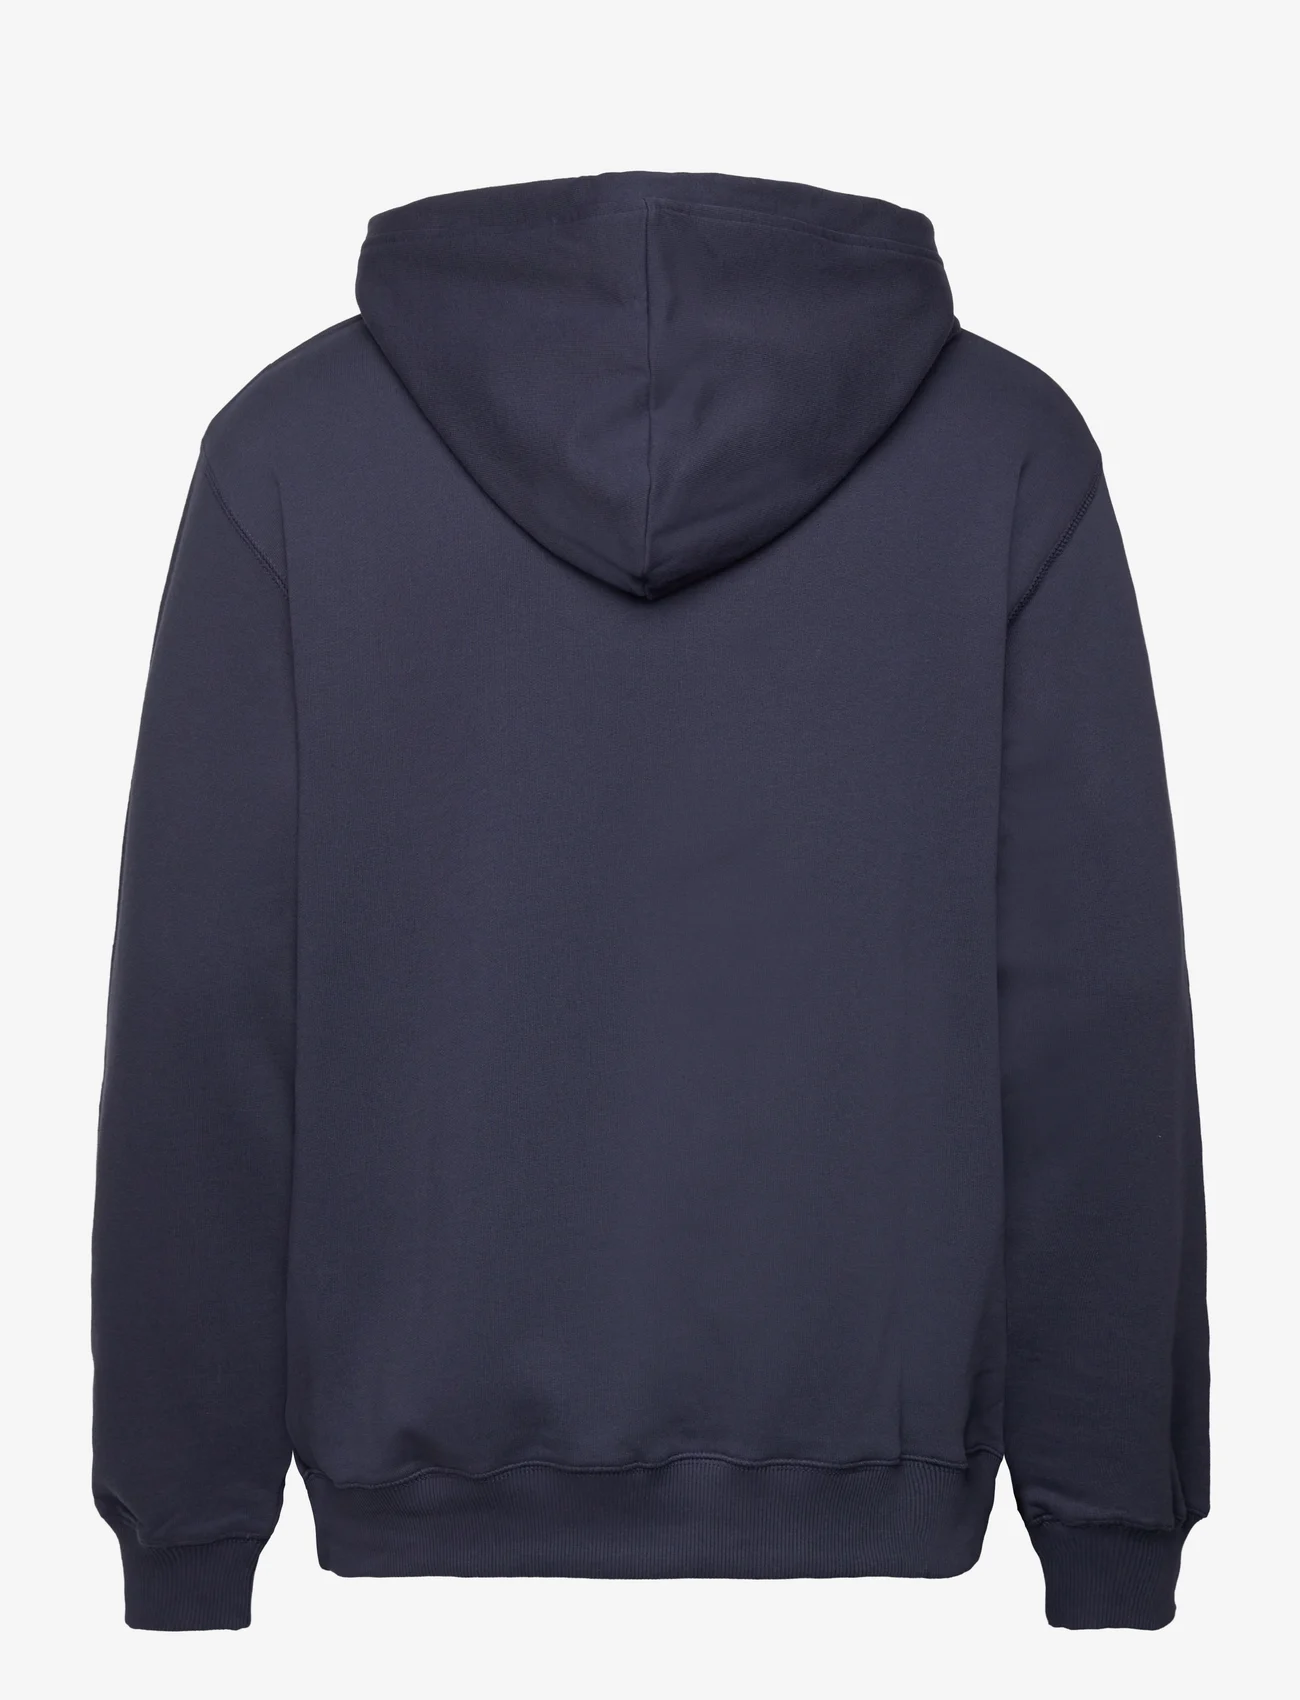 Makia - Sandö Hooded Sweatshirt - megztiniai ir džemperiai - dark navy - 1